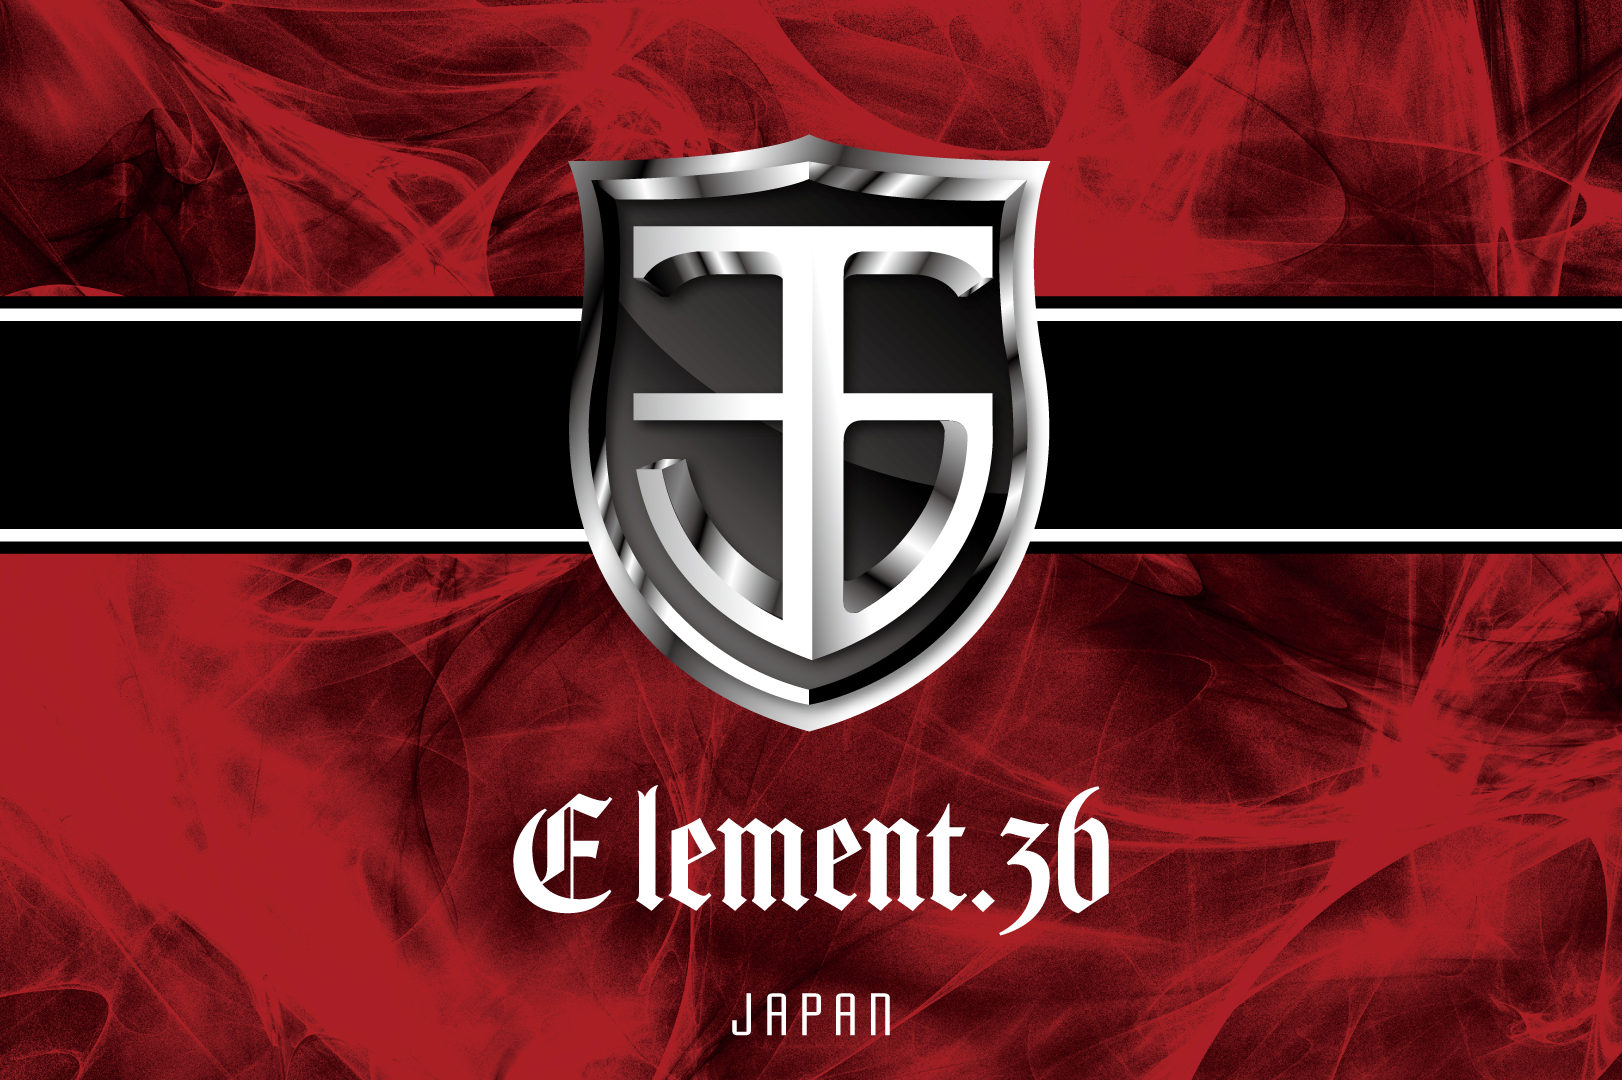 ELEMENT.36 JAPAN